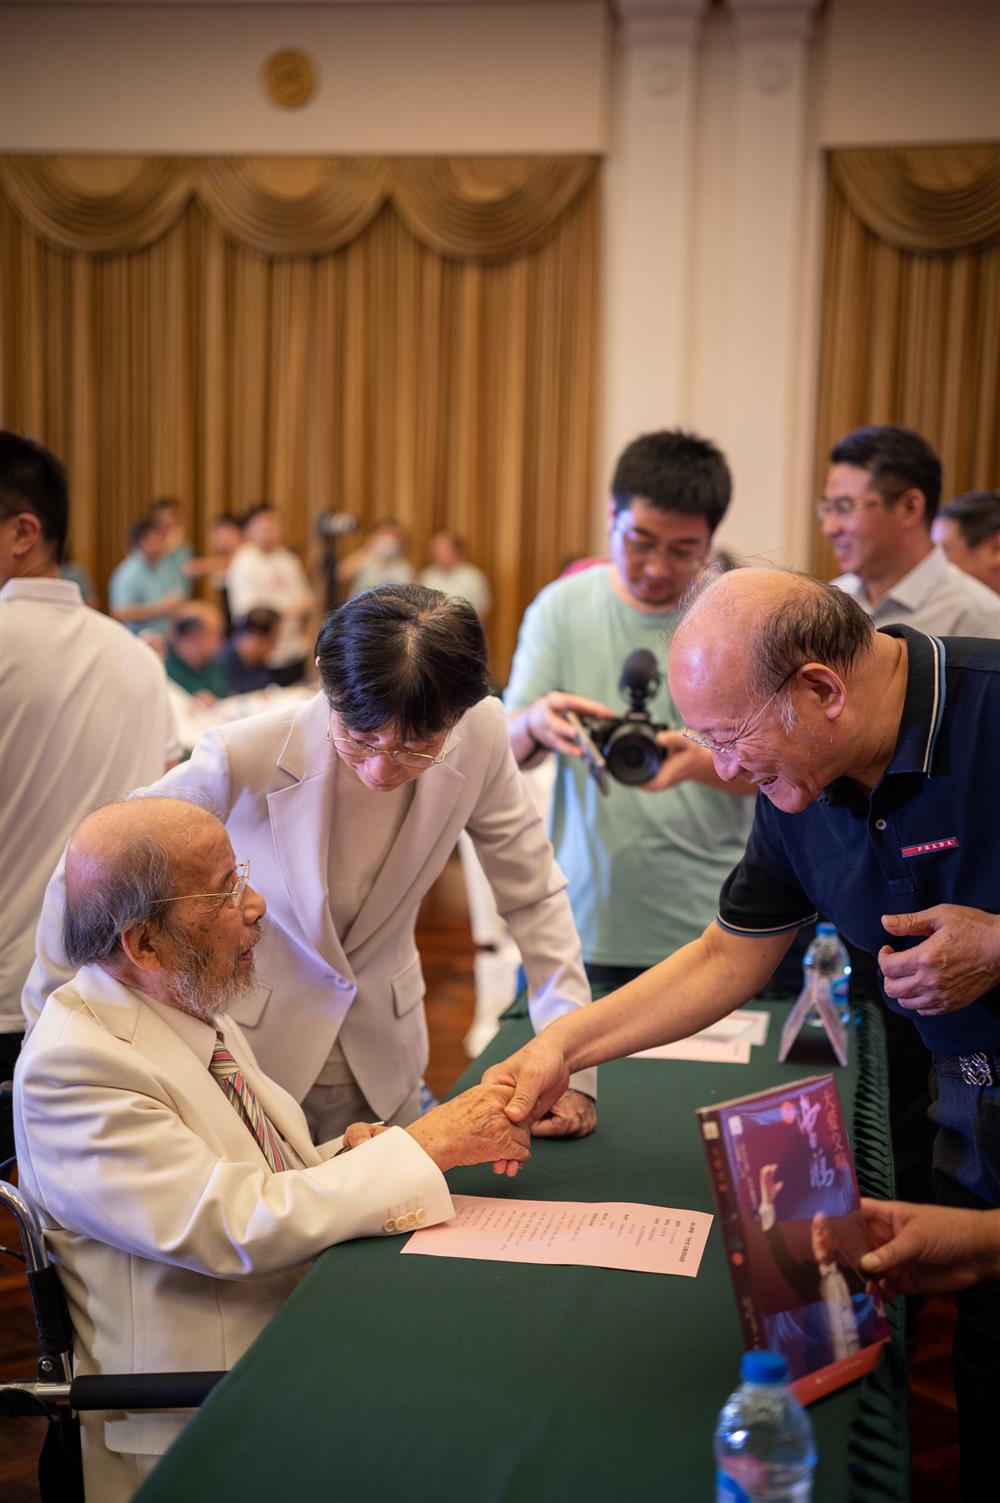 98岁指挥家曹鹏在轮椅上为读者签售,上海书展现场计划|申光|书展